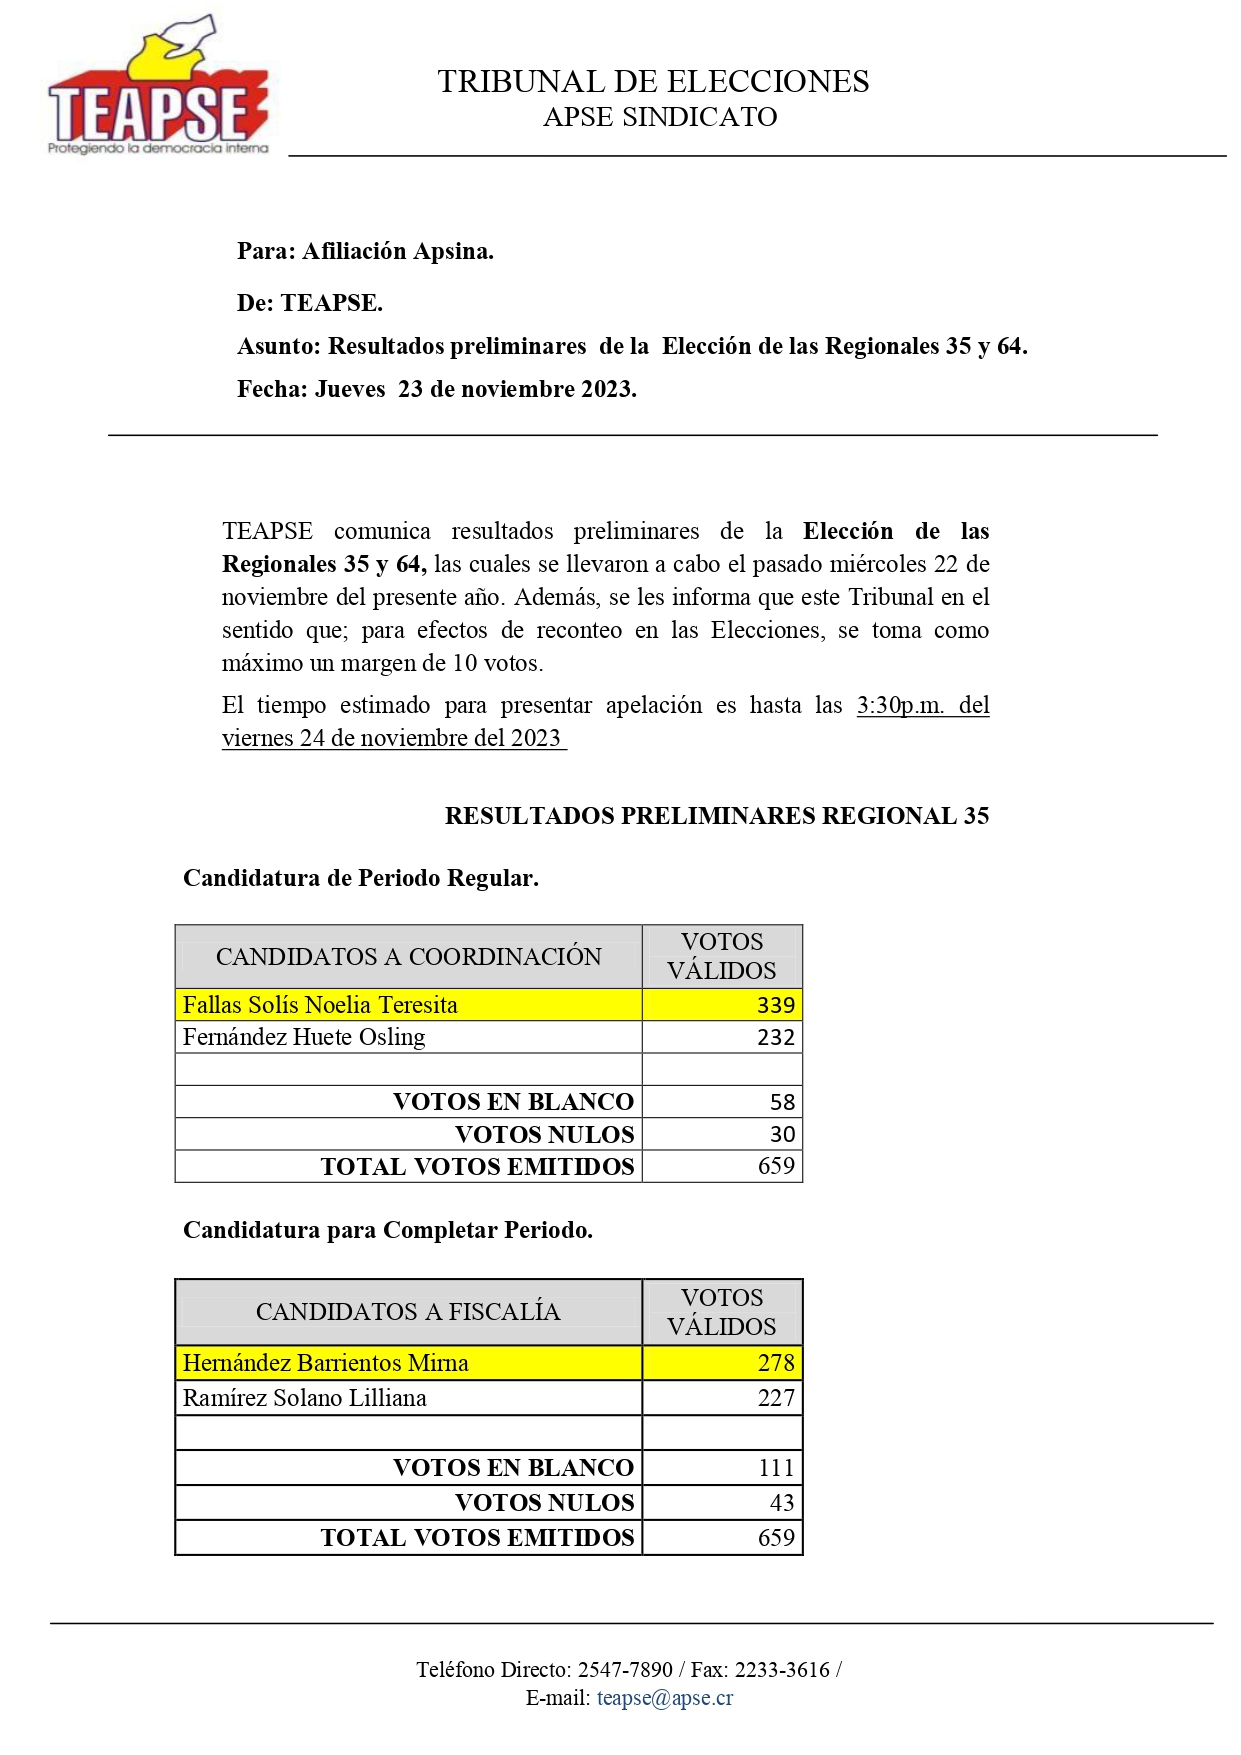 TEAPSE informa: Resultados definitivos de la Elección de las Regionales 35 y 64